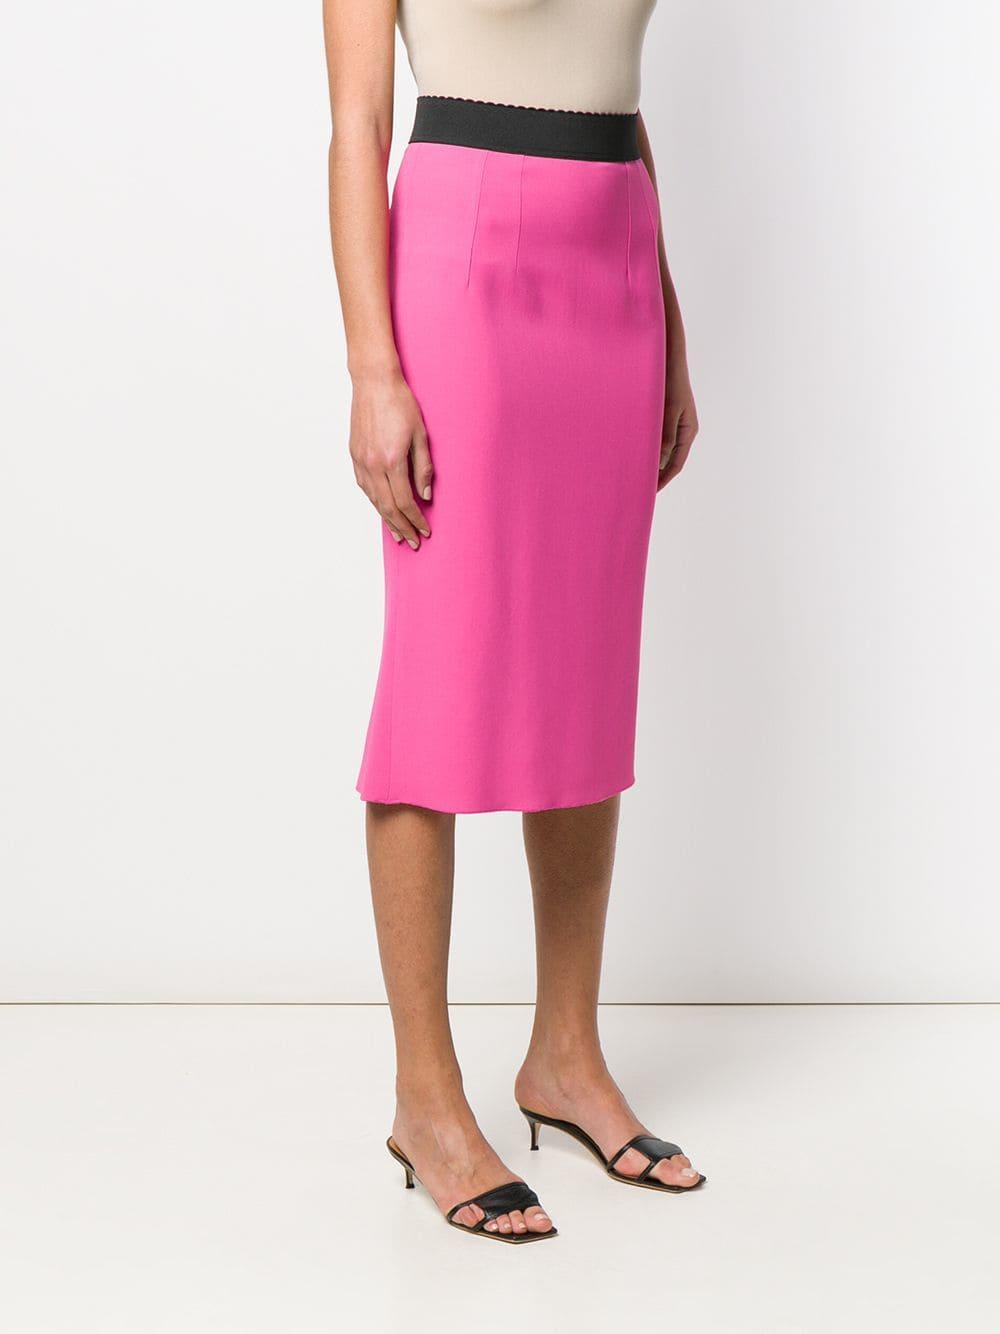 Dolce & Gabbana Silk High Waist Pencil Skirt in Pink - Lyst